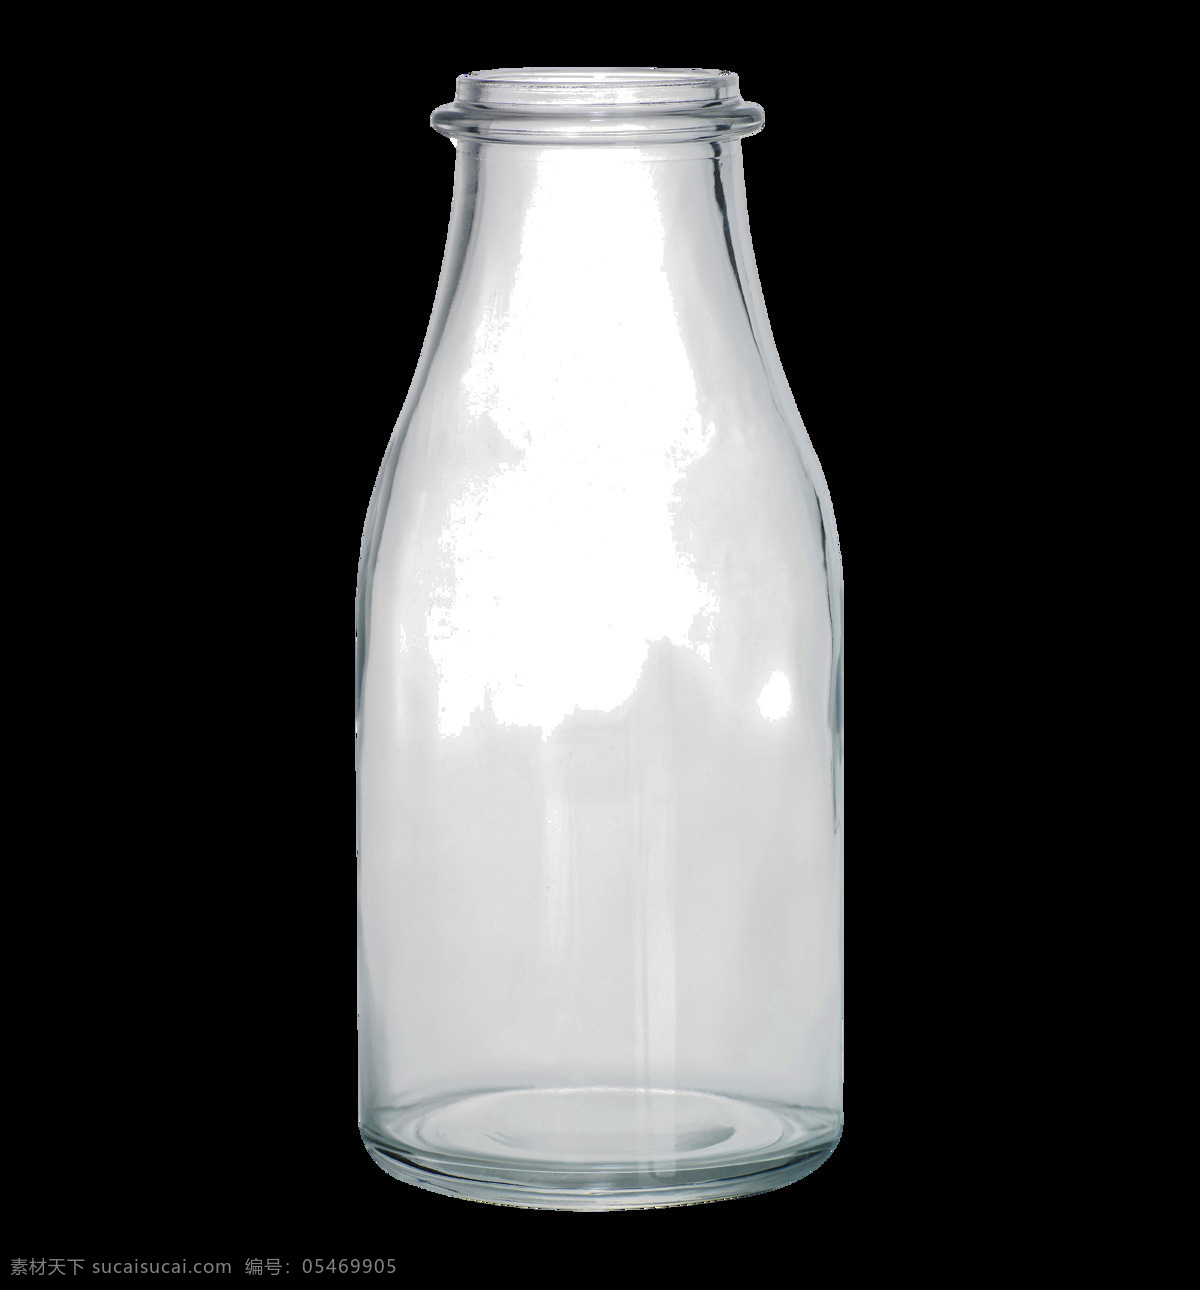 经典 许愿 瓶 元素 透明 玻璃瓶 信件 许愿瓶 沙滩 海星 广告素材 设计素材